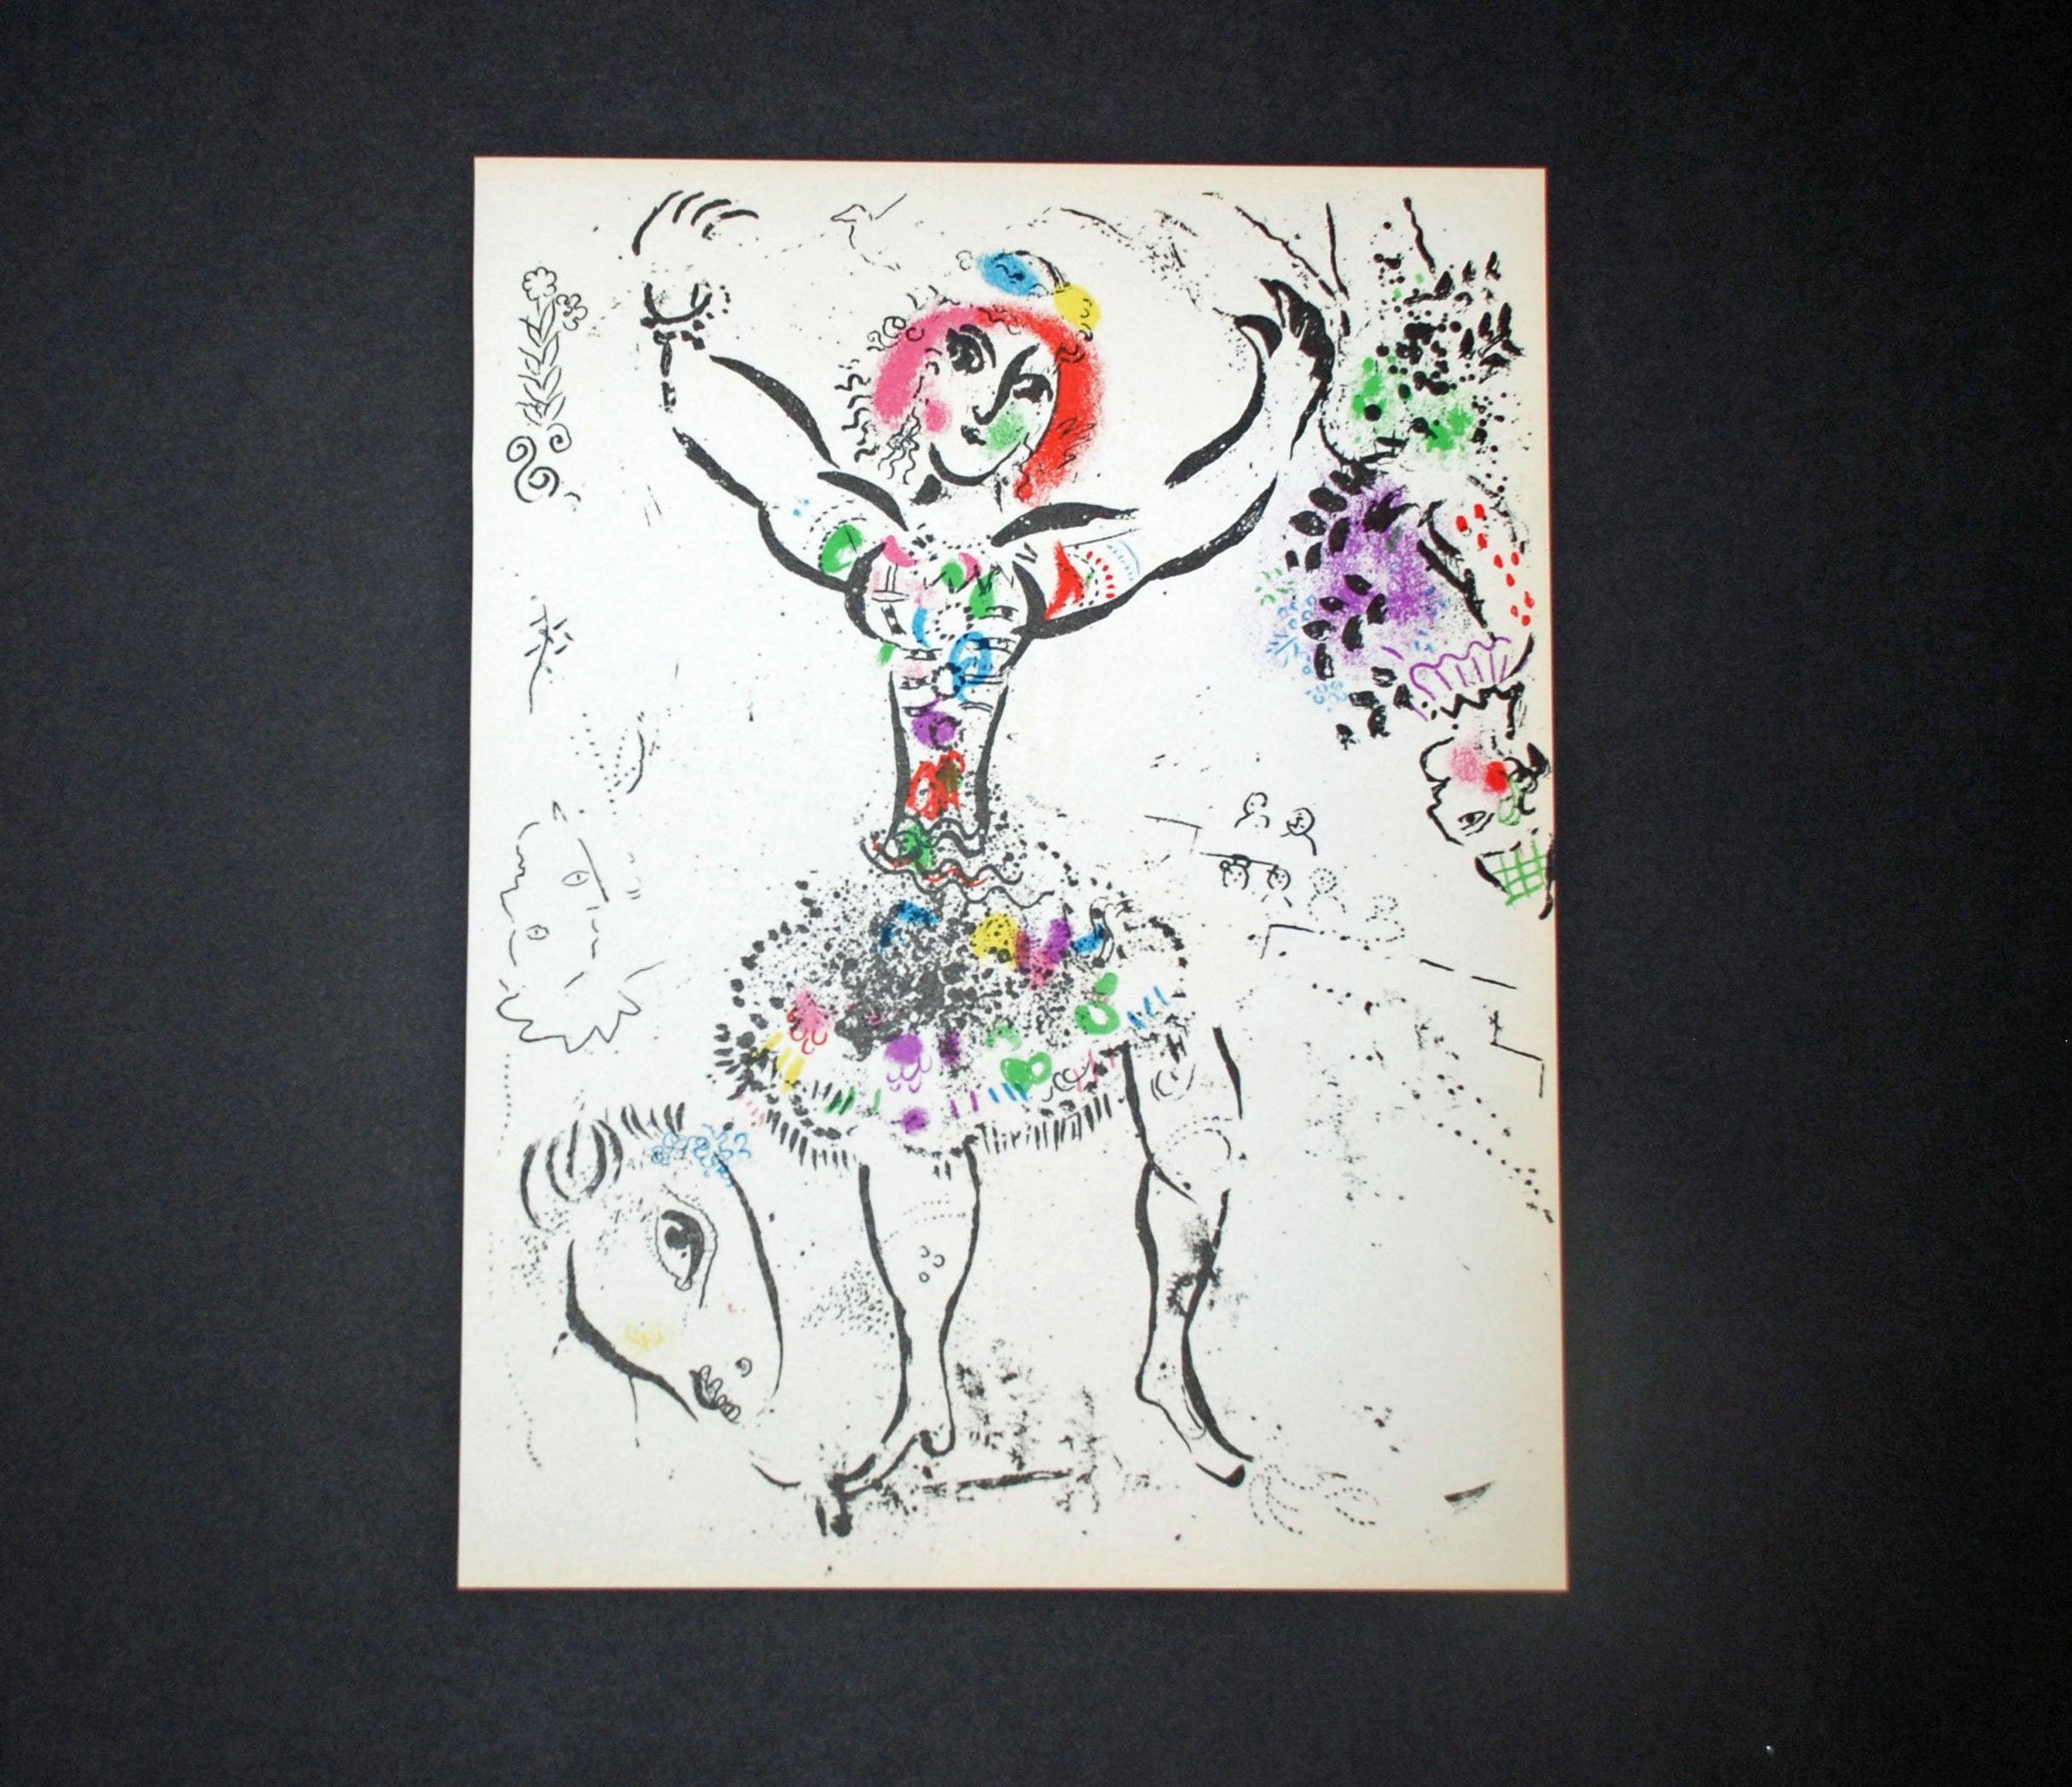 Frau Juggler, aus der Lithographie Mourlot von 1960, Lithographie I (Moderne), Print, von Marc Chagall